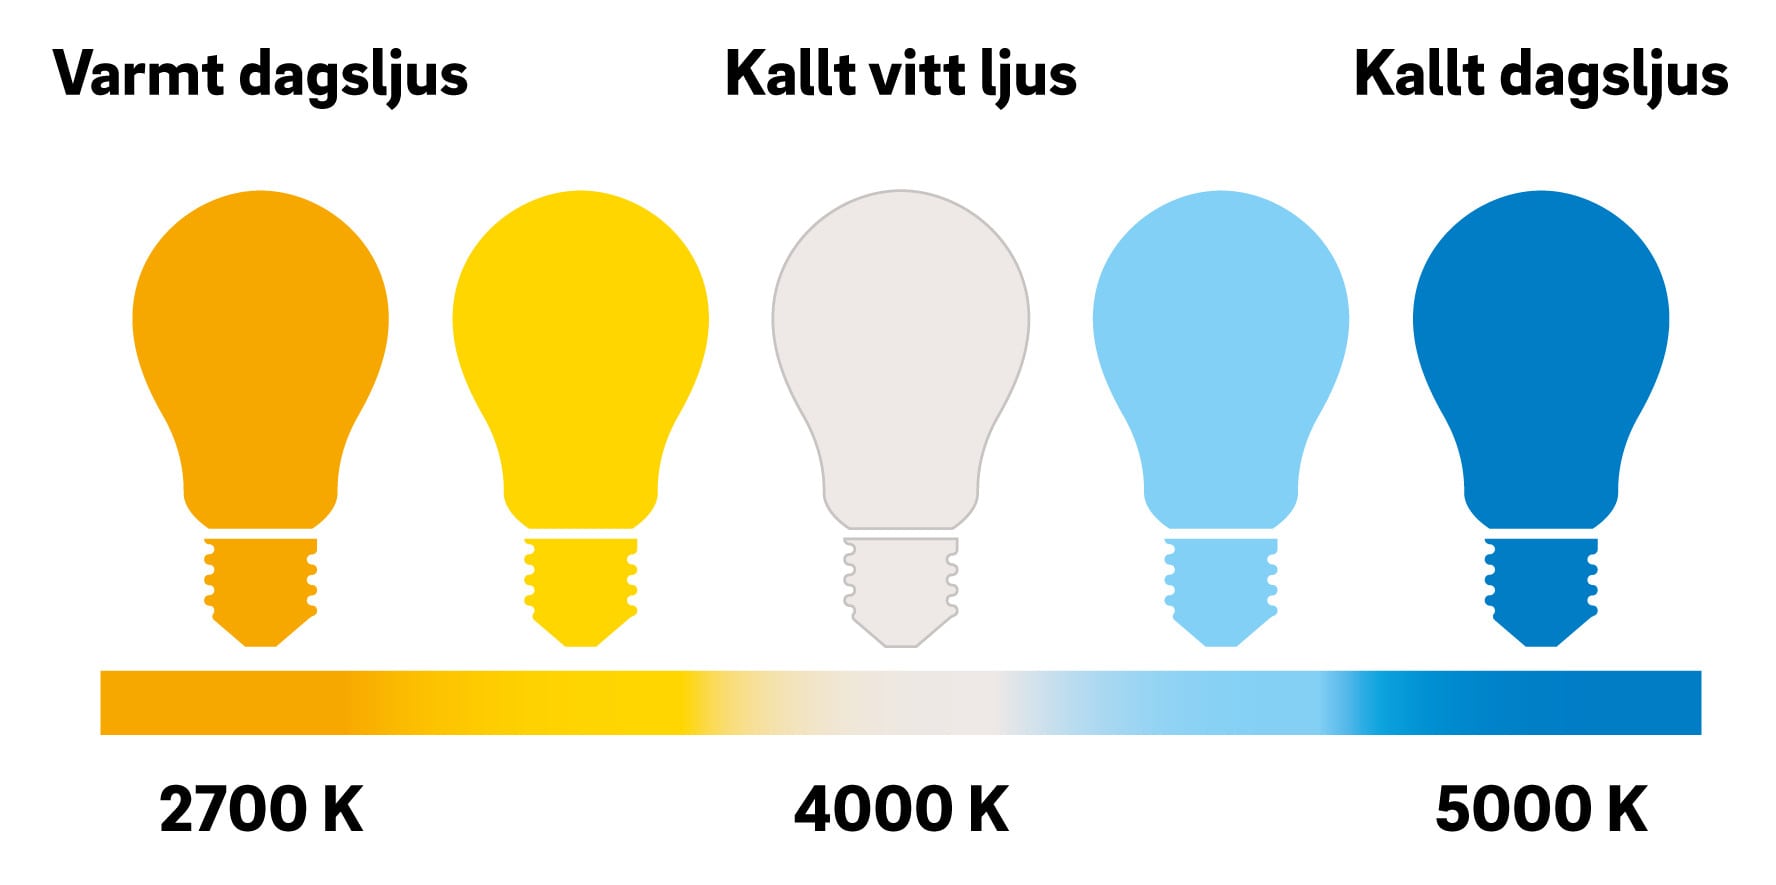 Illustration över färgtemperaturer enligt Kelvin-skalan